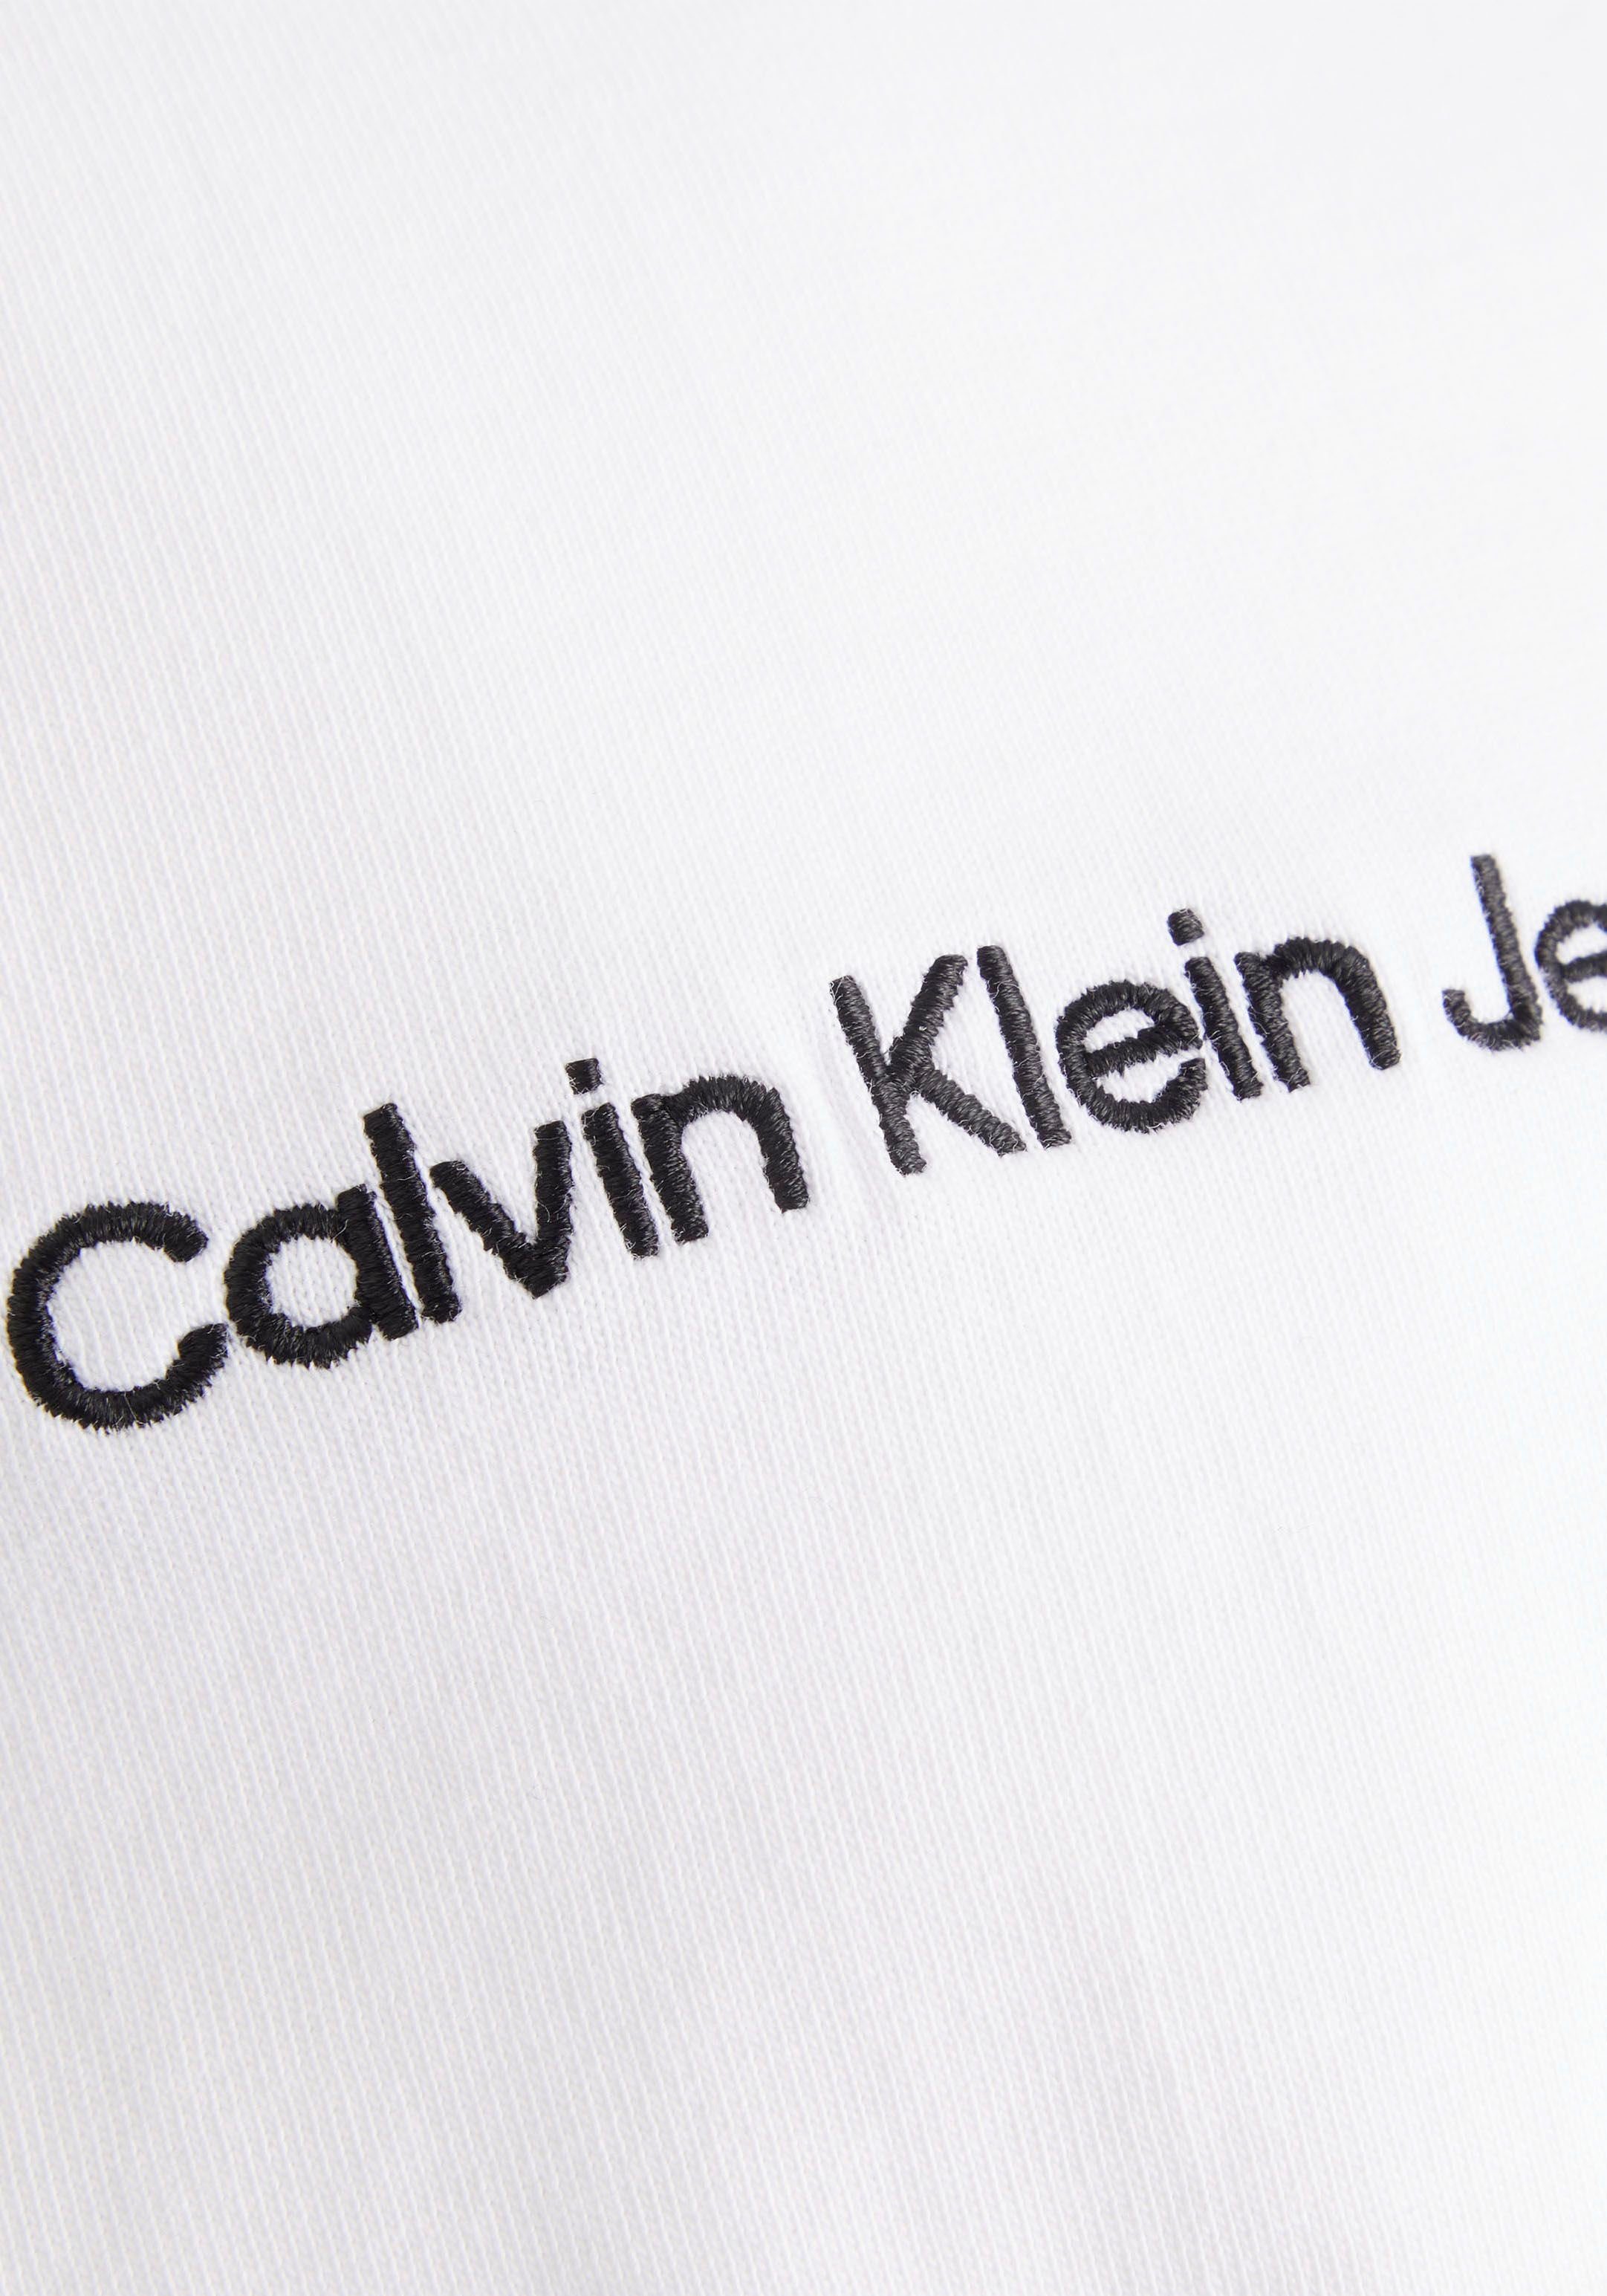 Oversized-Passform Jeans T-Shirt weiß Klein in Calvin